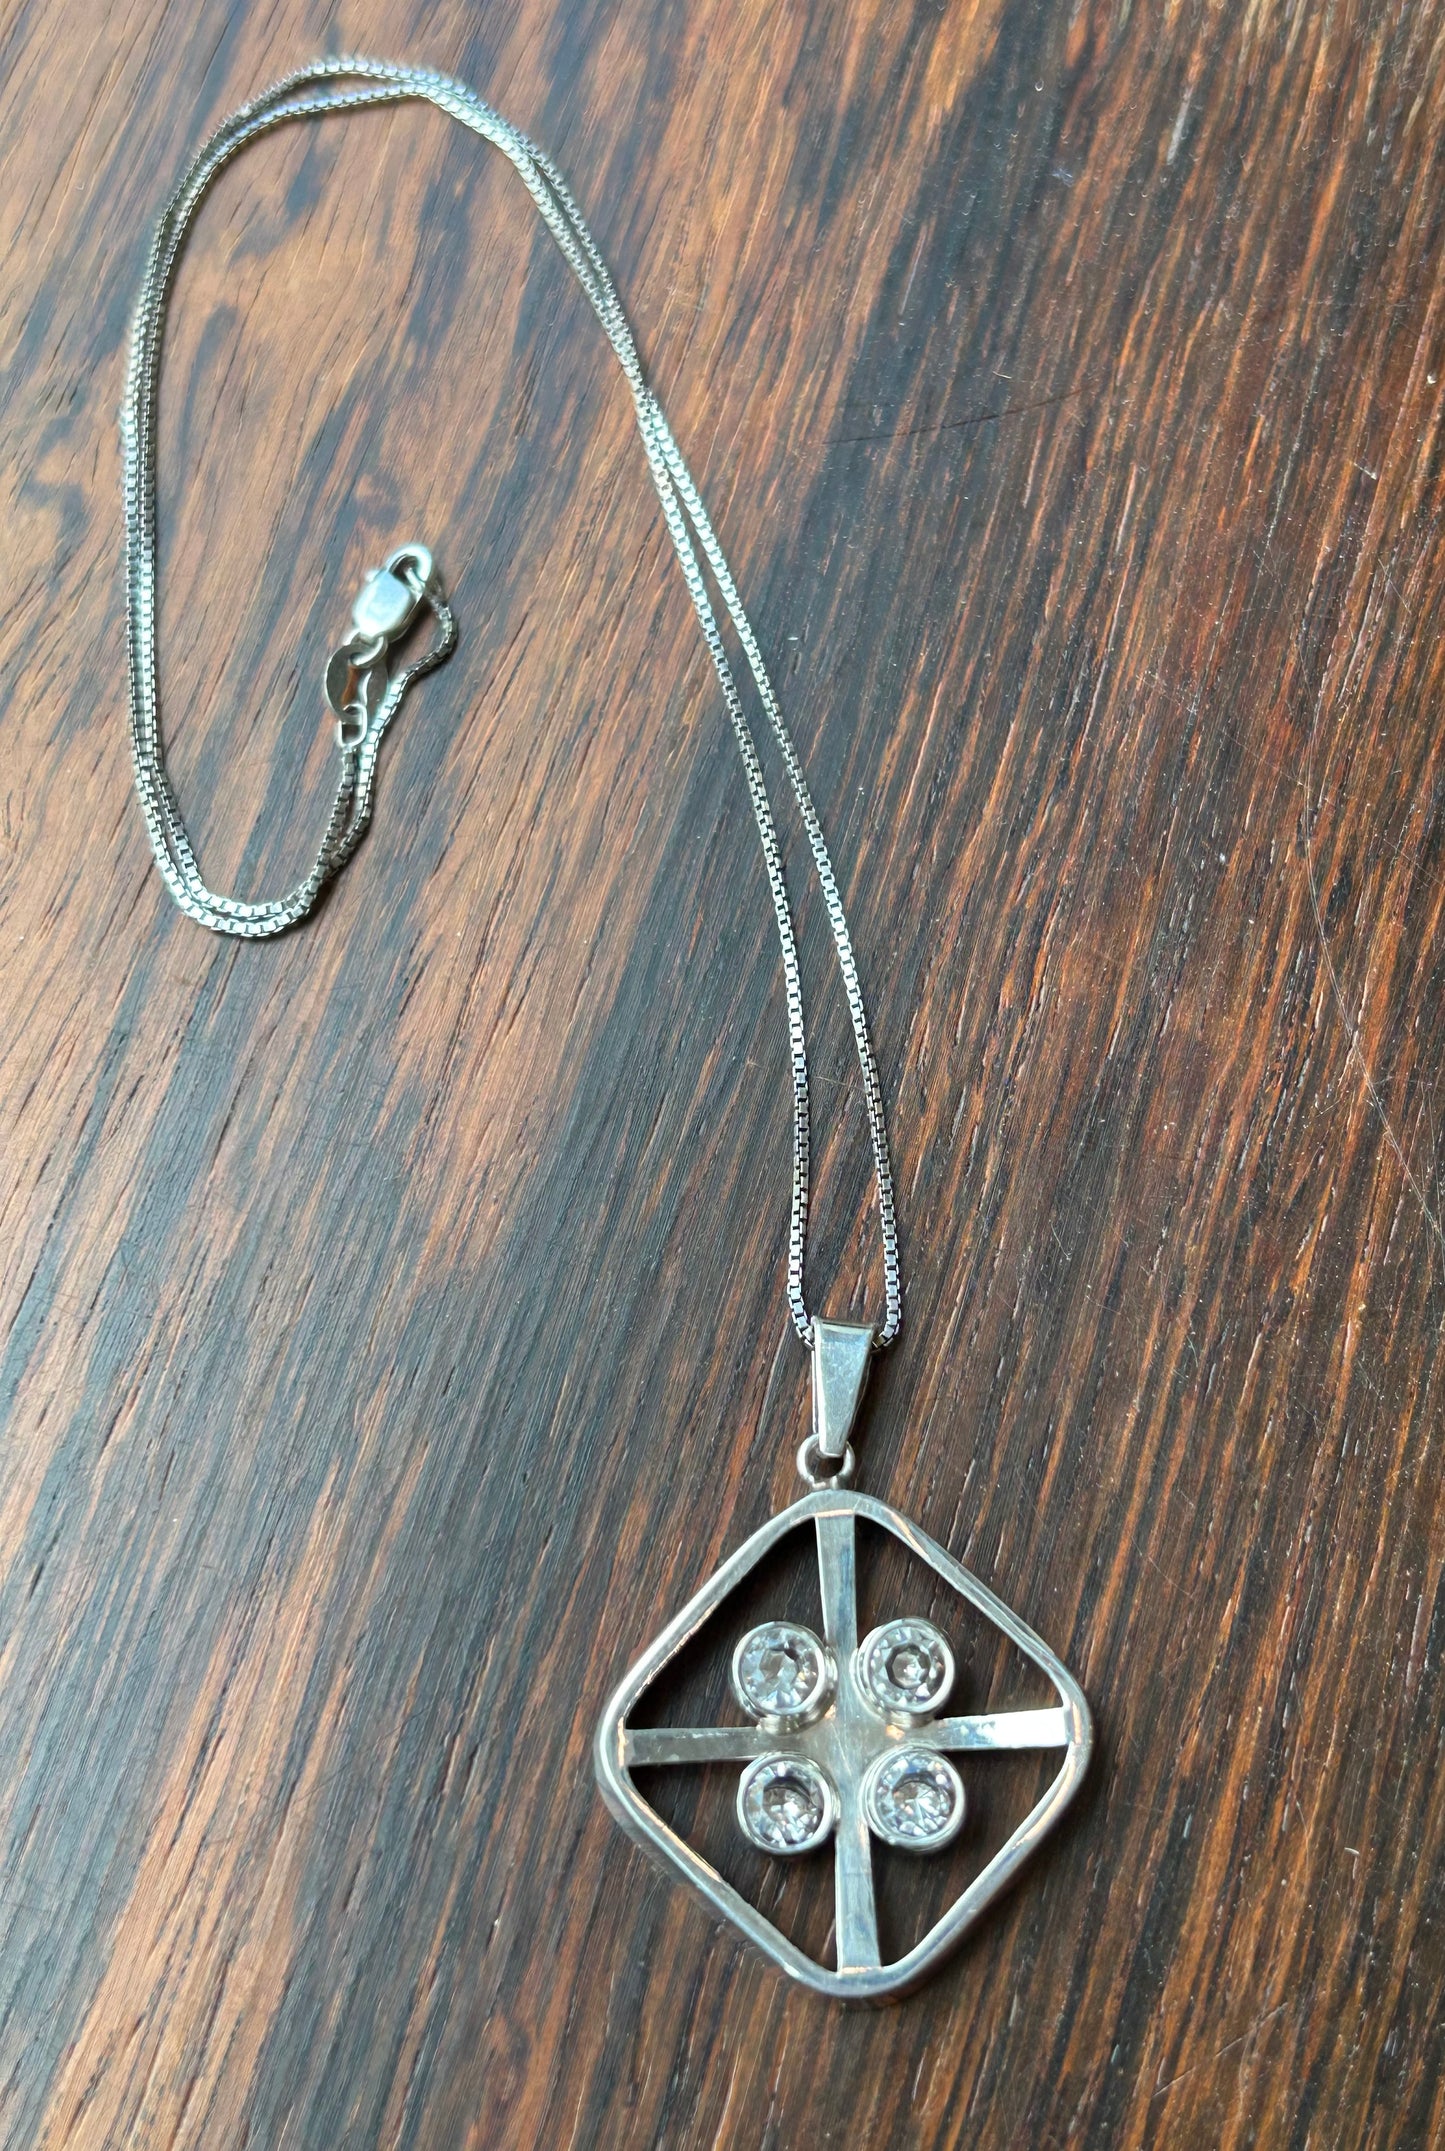 Silver pendant with rock crystals - Salovaara, Finland